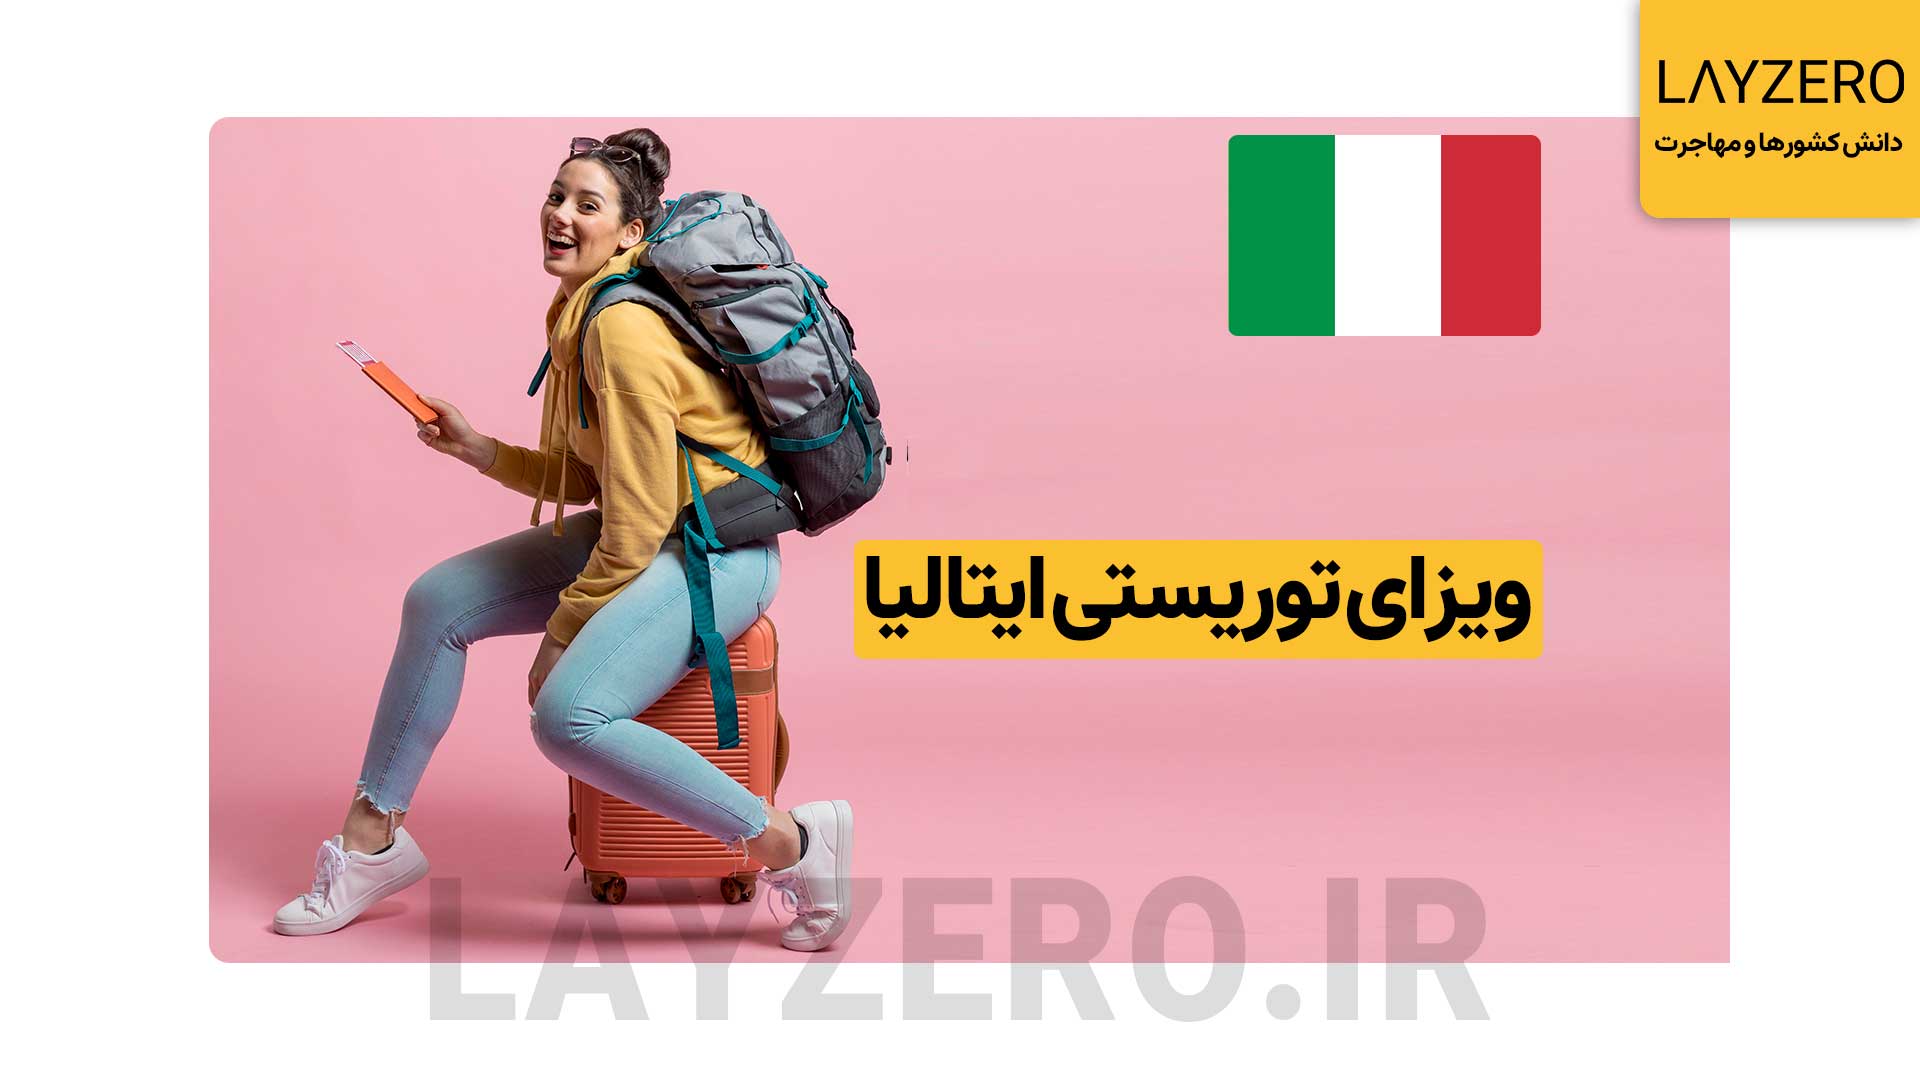 ویزای توریستی ایتالیا: شرایط، مدارک، هزینه + بررسی مراحل برای گردشگری و اقامت کوتاه مدت در ایتالیا، نیاز به اخذ ویزای توریستی ایتالیا یا همان شینگن ایتالیا دارید.